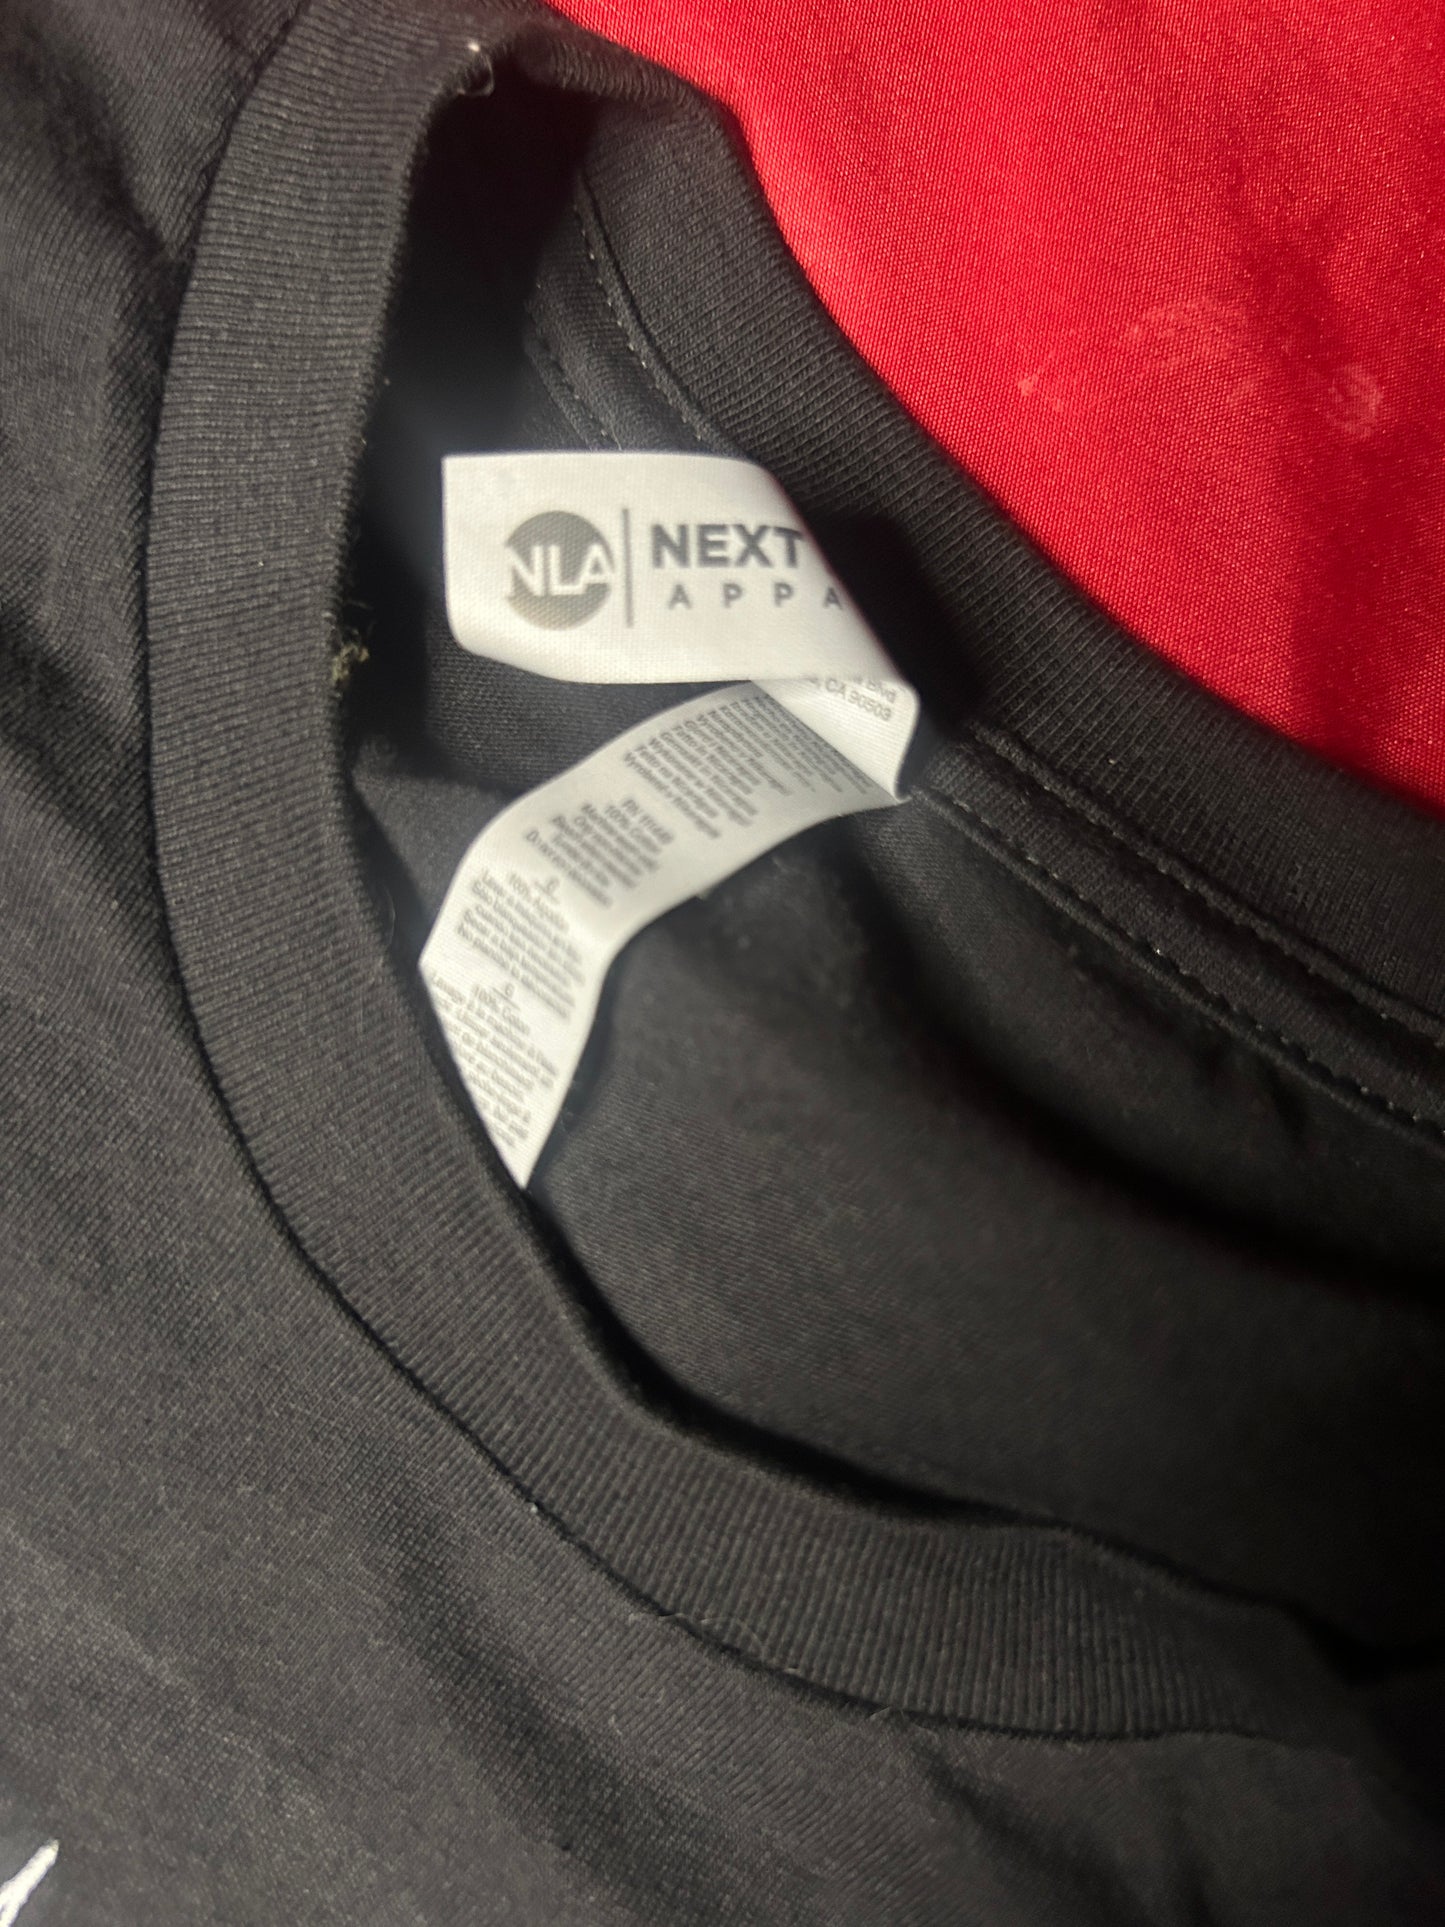 OFFICIAL 𝕿𝖍𝖊 𝕭𝖚𝖗𝖎𝖊𝖉 𝖂𝖎𝖙𝖈𝖍 Unisex Shirt